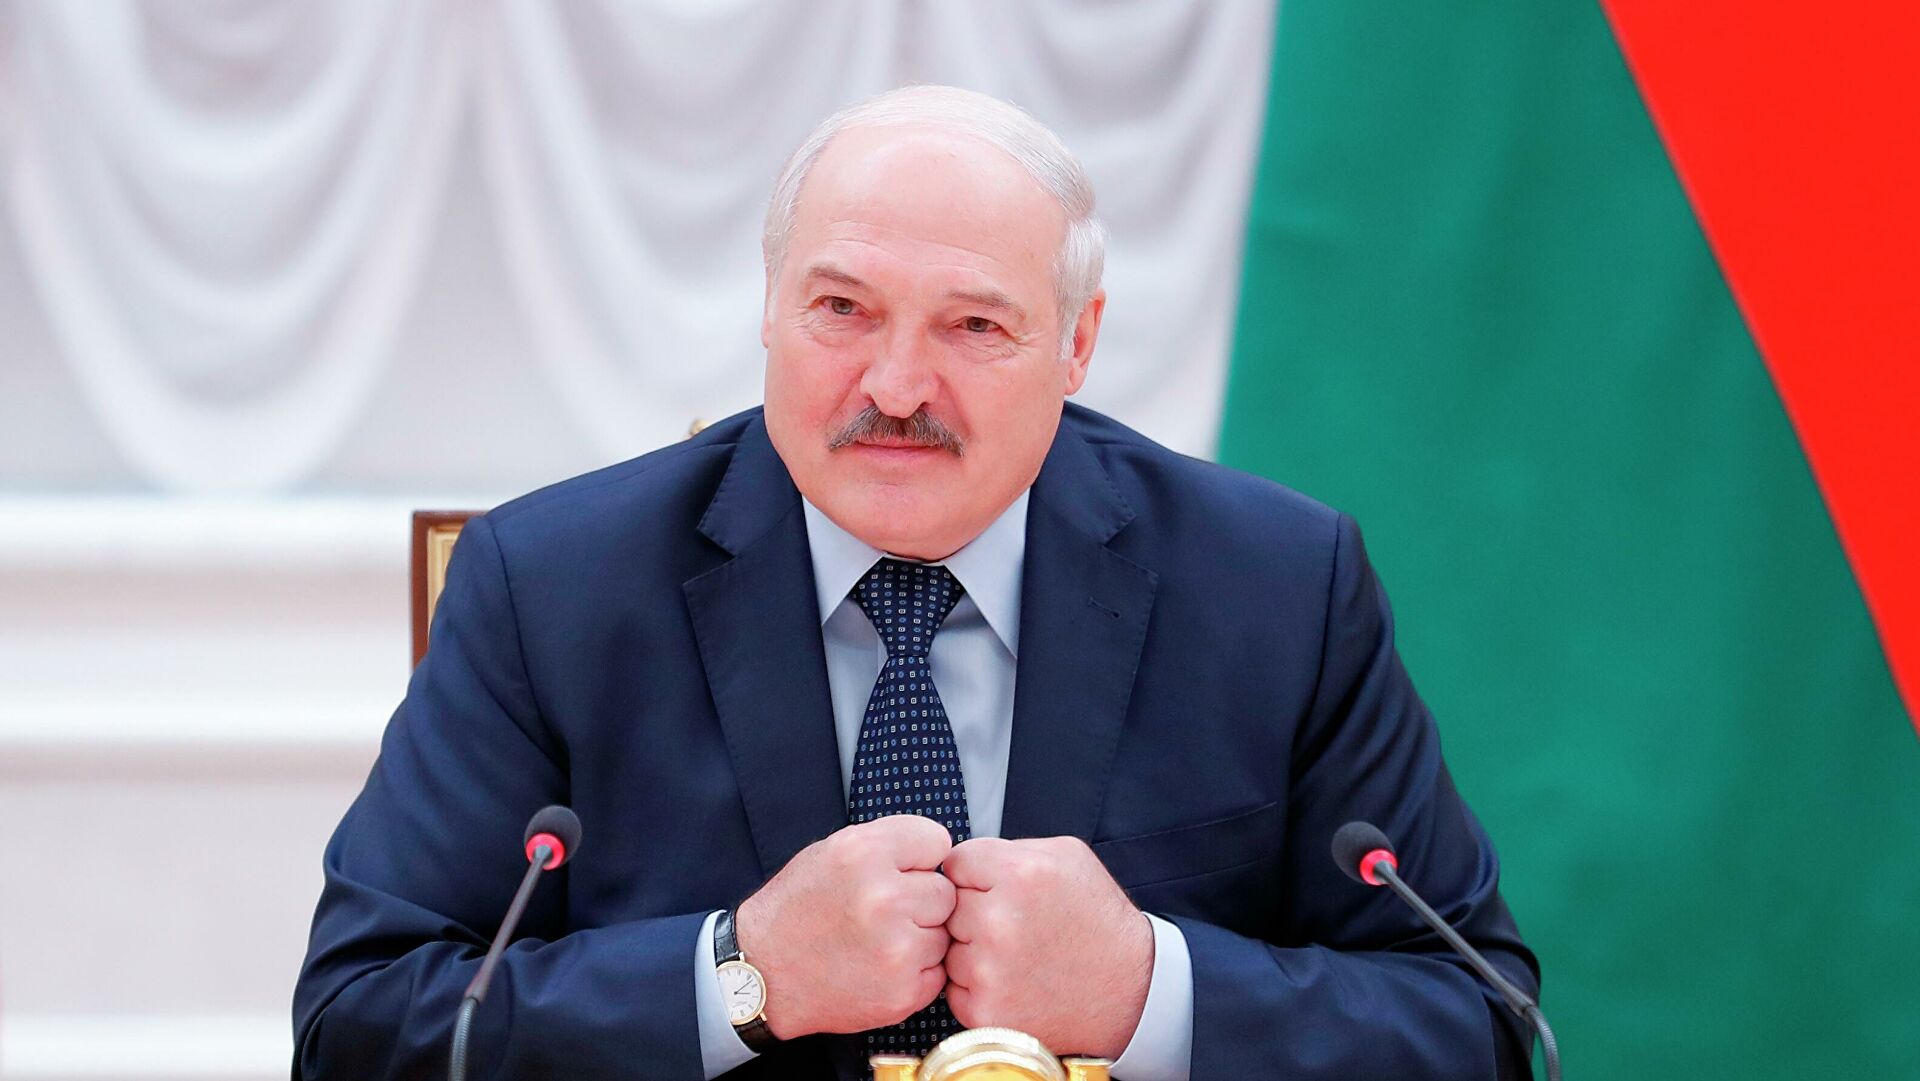 Лукашенко заговорил об "угрозе" для Беларуси со стороны Украины: у нас открывается новый фронт